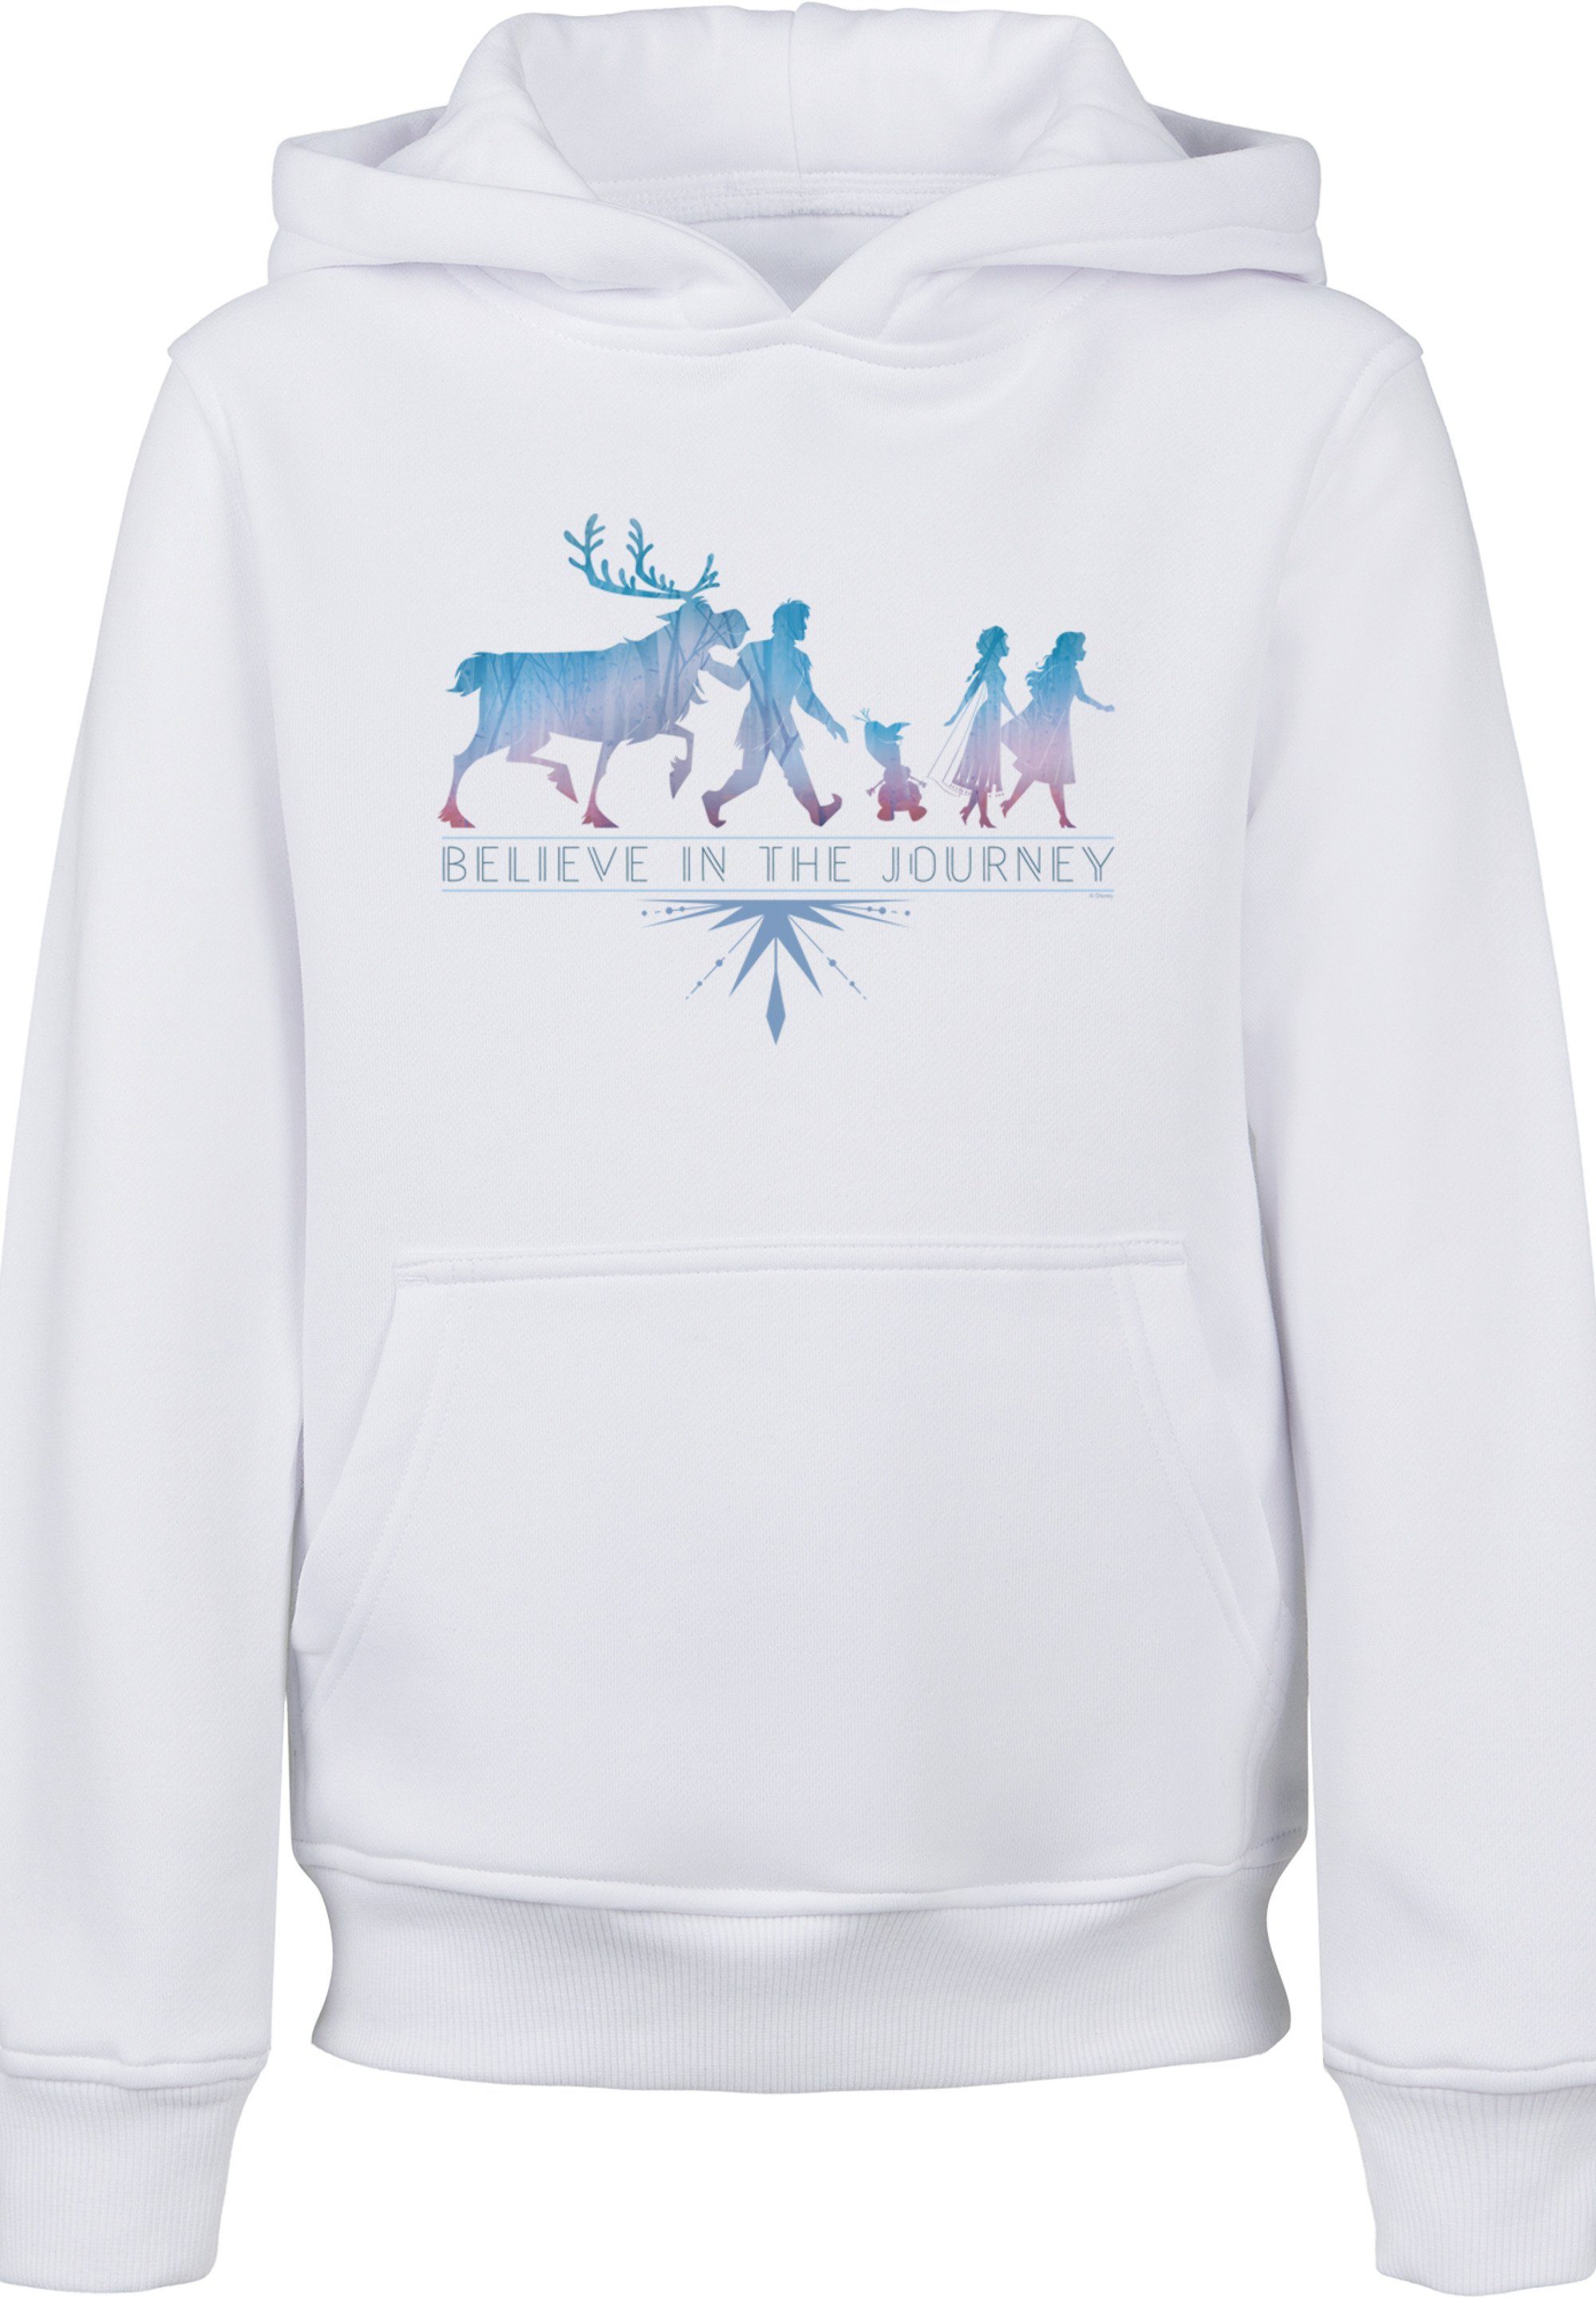 Kinder,Premium Merch,Jungen,Mädchen,Bedruckt Journey Disney F4NT4STIC Believe Frozen Sweatshirt In Unisex The weiß 2